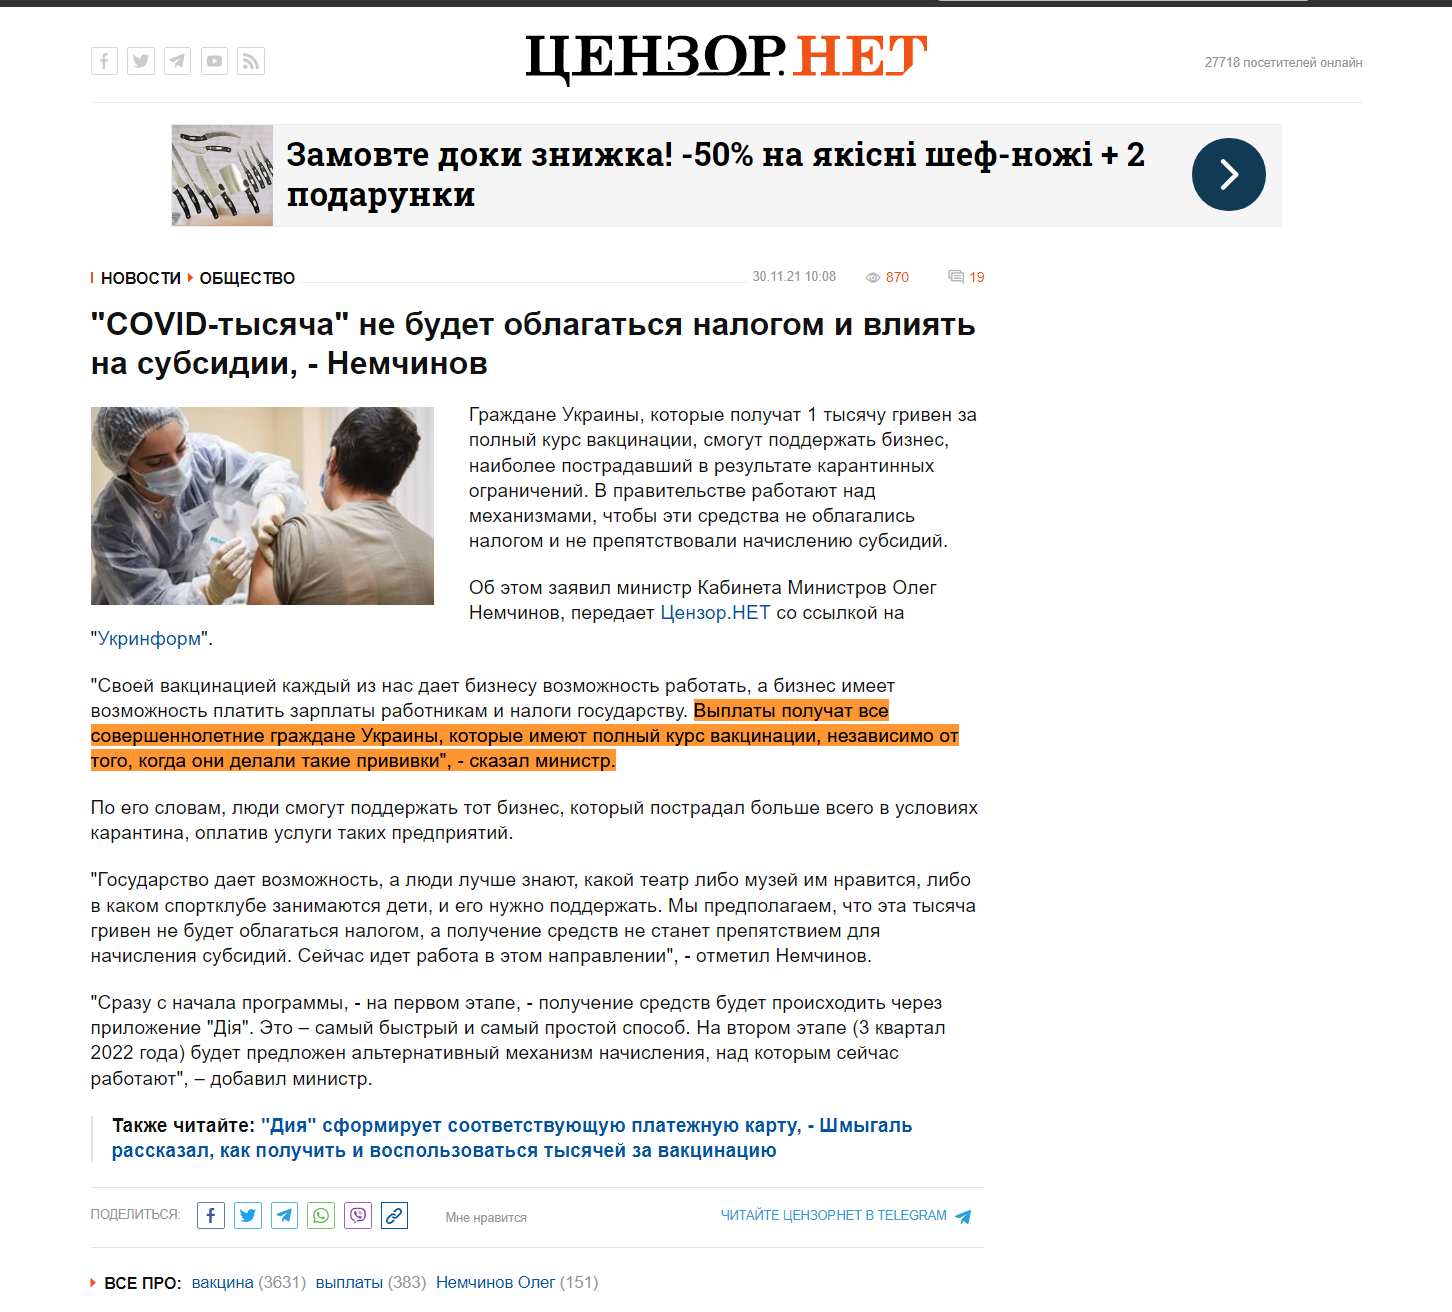 https://censor.net/ru/news/3302382/covidtysyacha_ne_budet_oblagatsya_nalogom_i_vliyat_na_subsidii_nemchinov